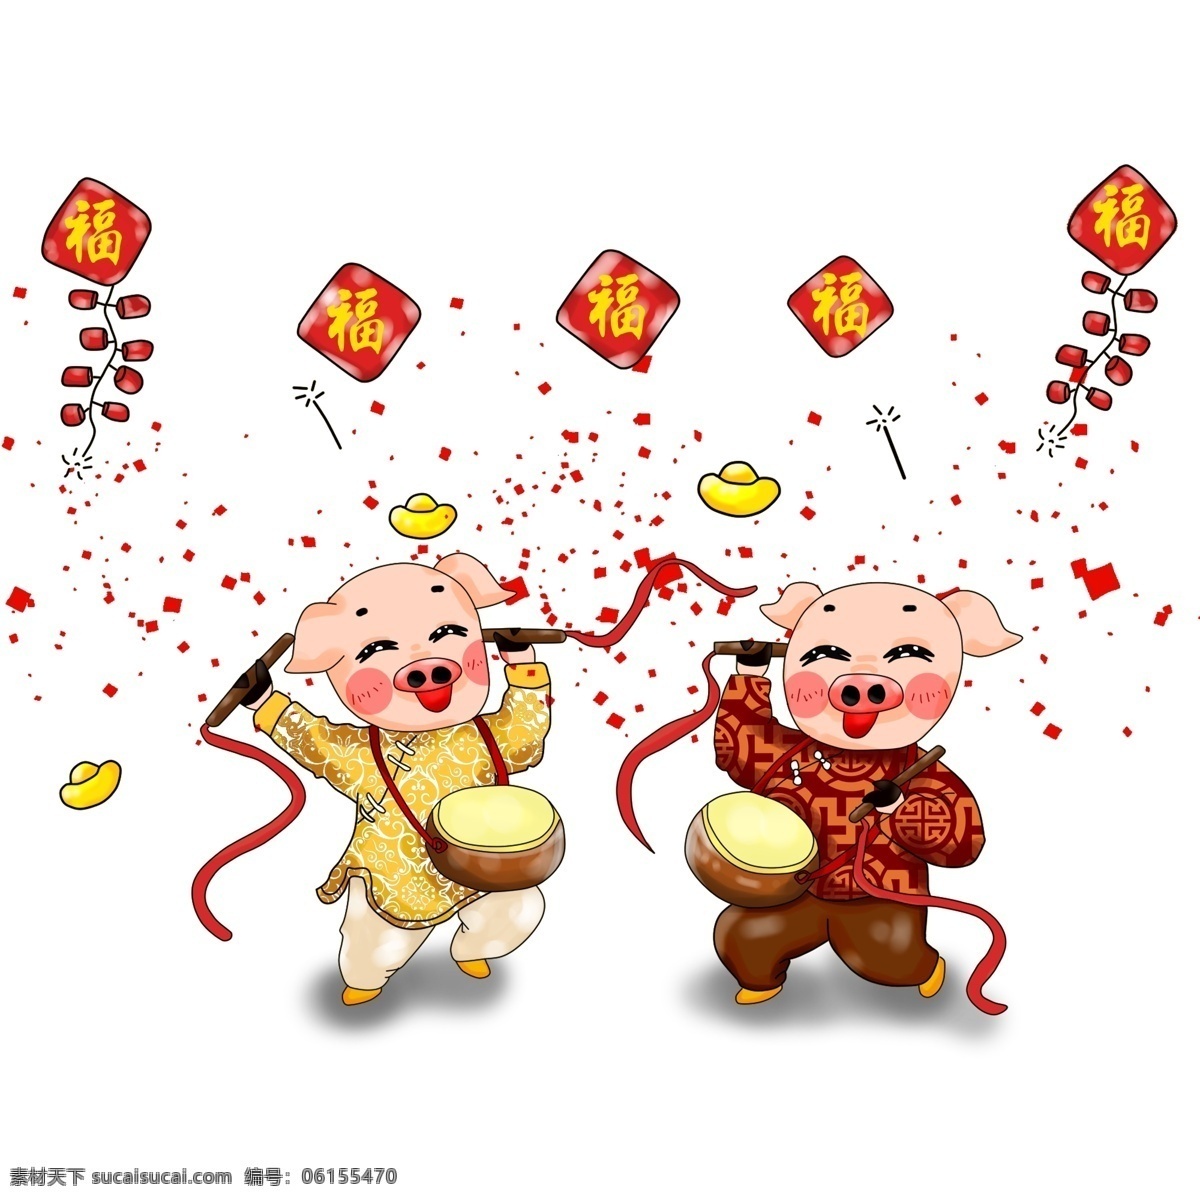 新年 卡通 手绘 厚 涂 猪年 喜庆 打鼓 插画 元素 中国风 红色 厚涂 鞭炮 欢喜 免抠 透明底 实用 矢量